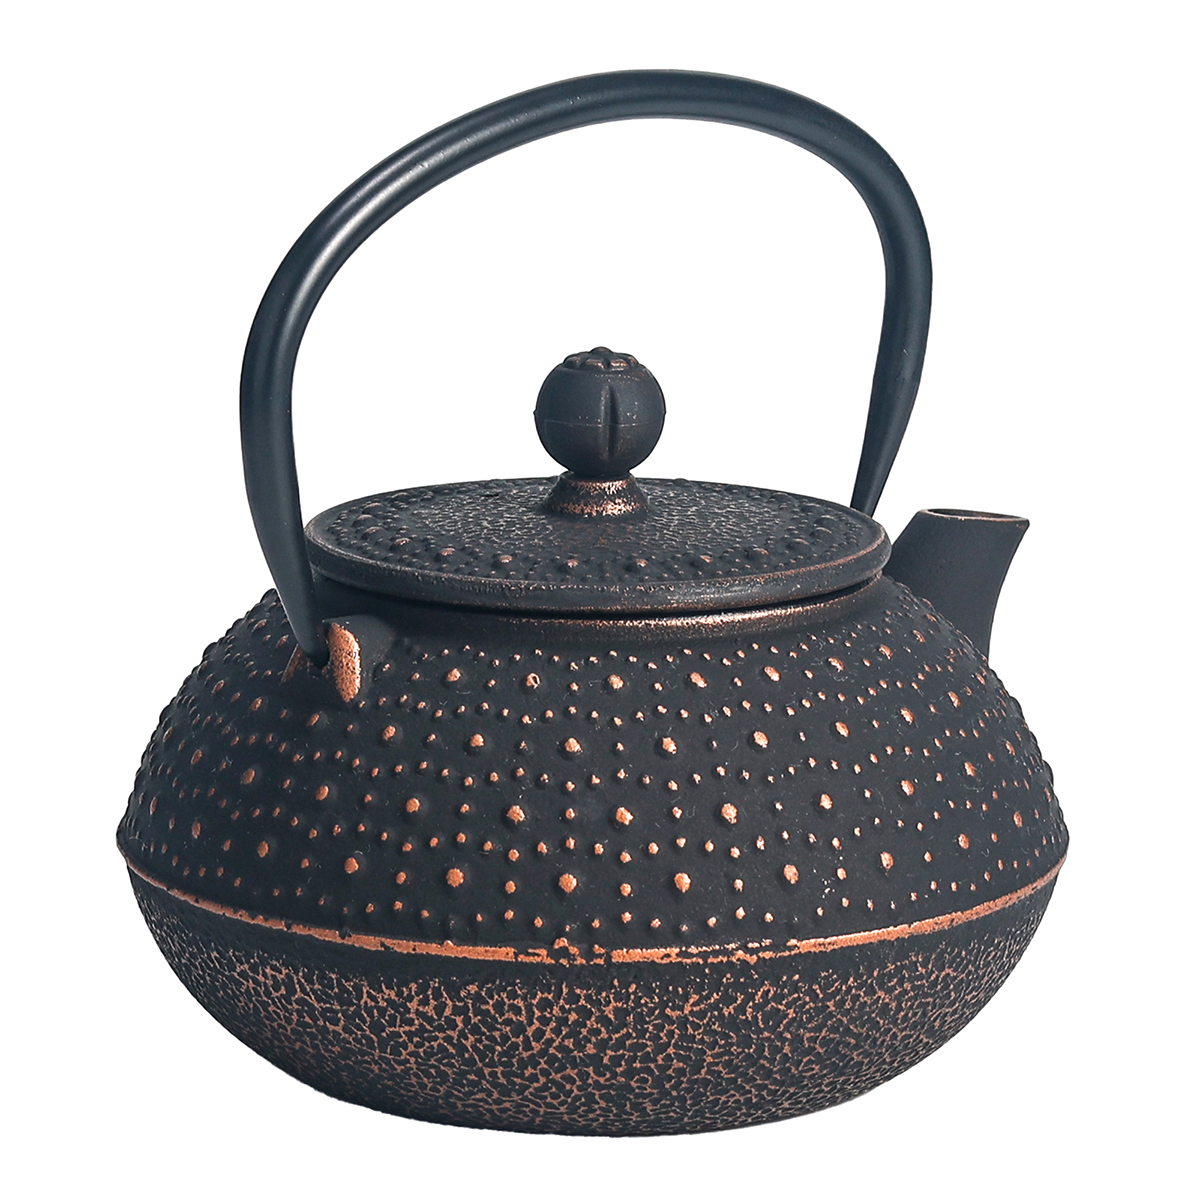 Japanese style cast iron teapot 0.8 liter